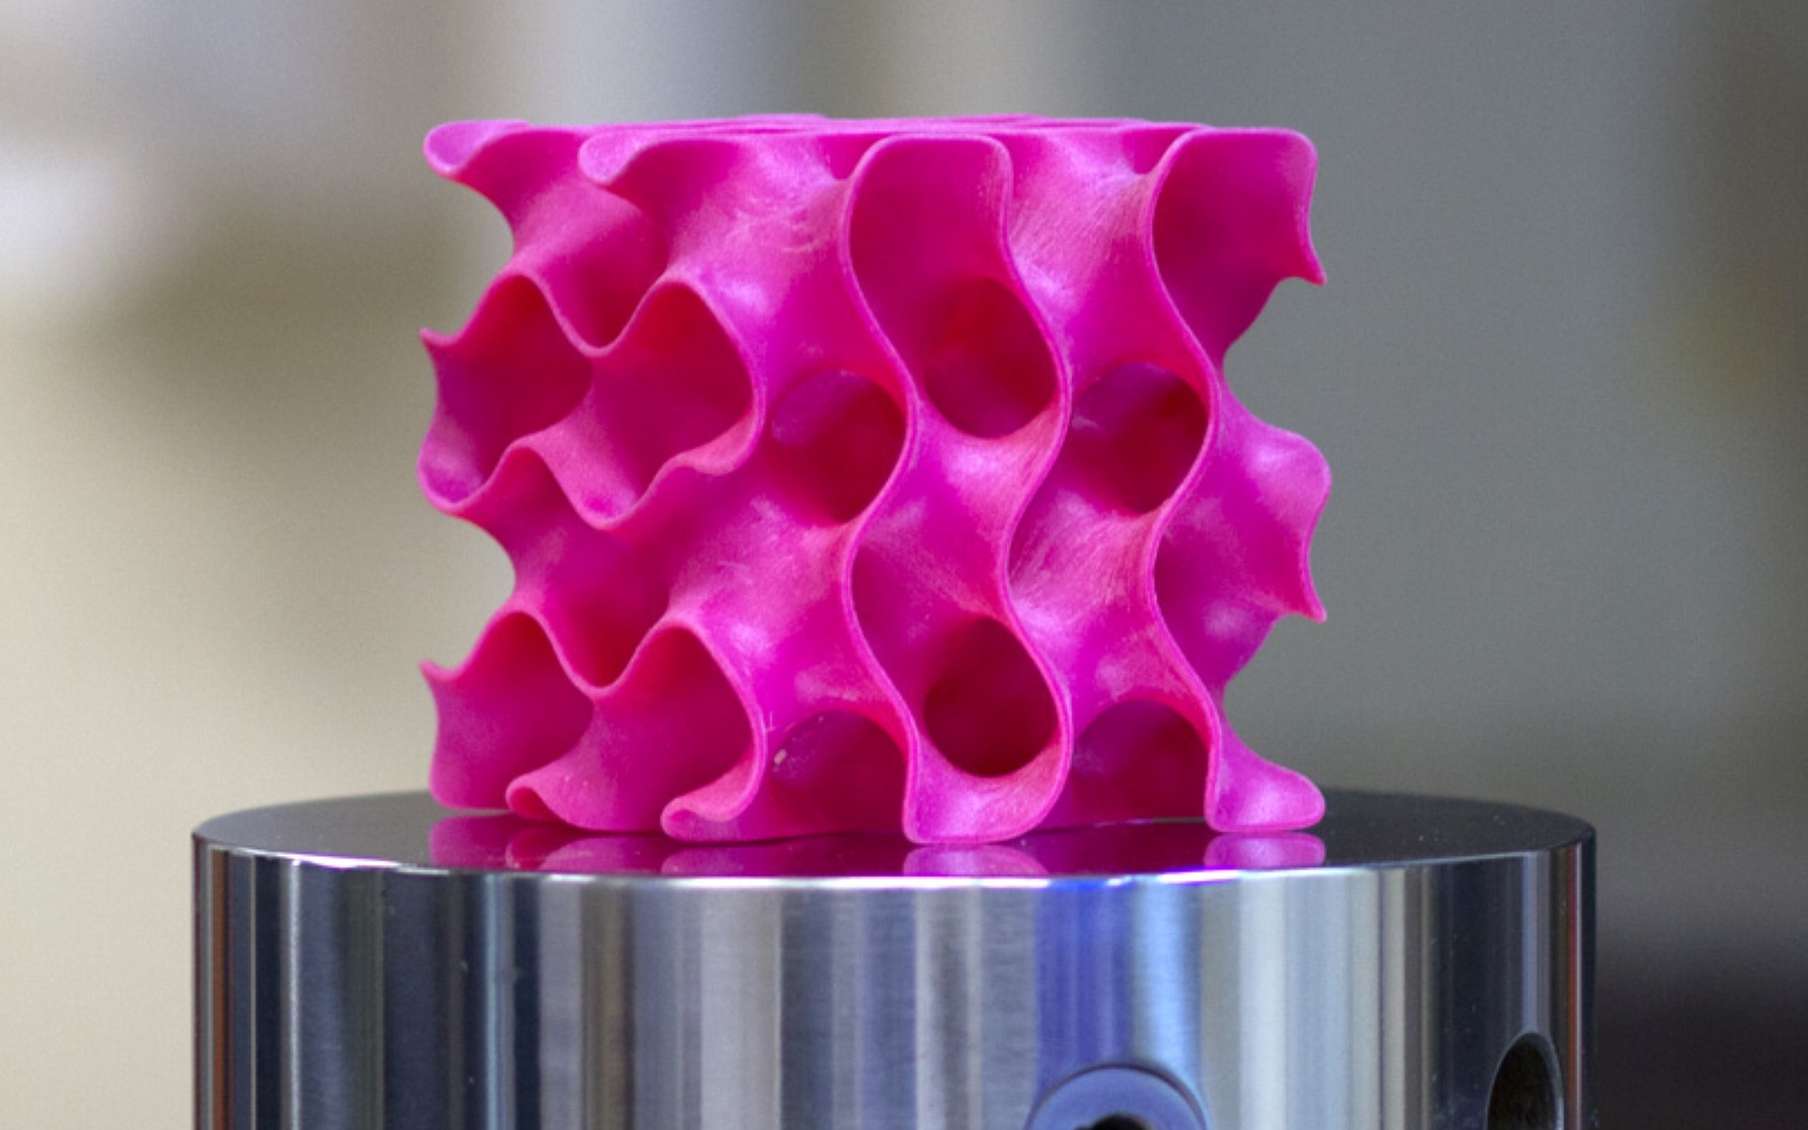 Cette structure en plastique a été réalisée avec une imprimante 3D. Elle fait partie des surfaces minimales appelées gyroides. © Melanie Gonick, MIT